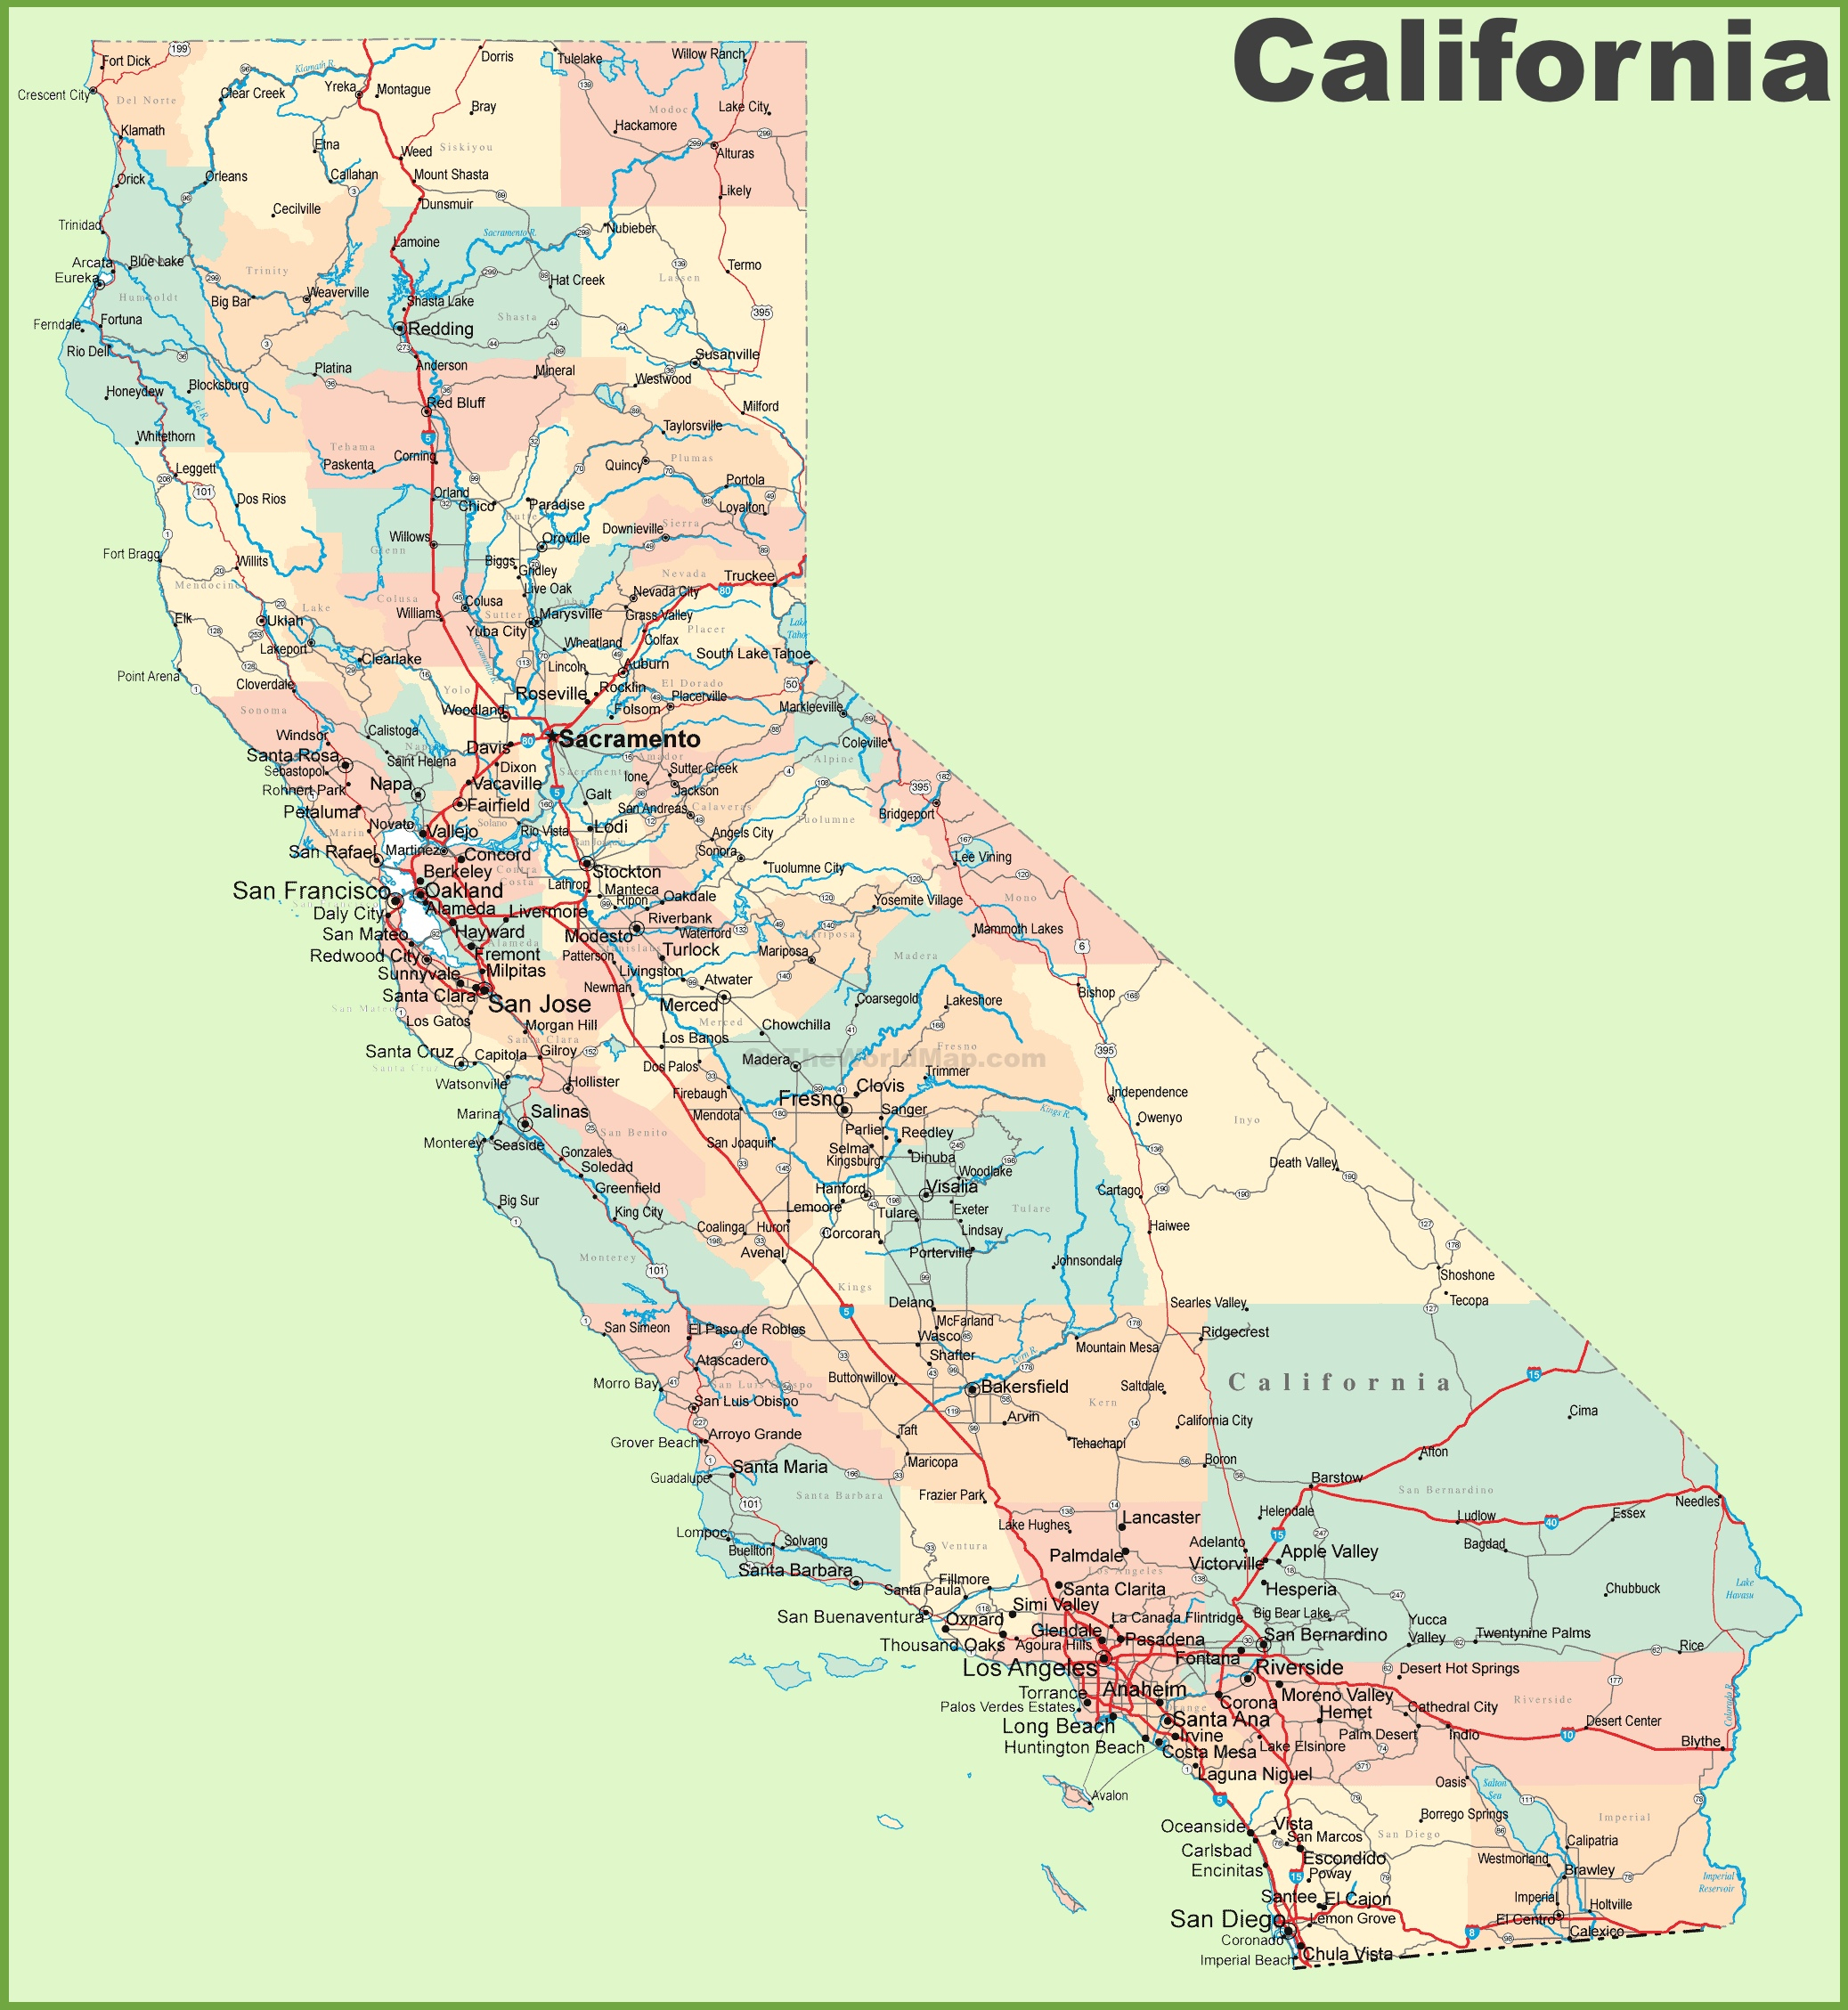 California Road Map - California Highway Map